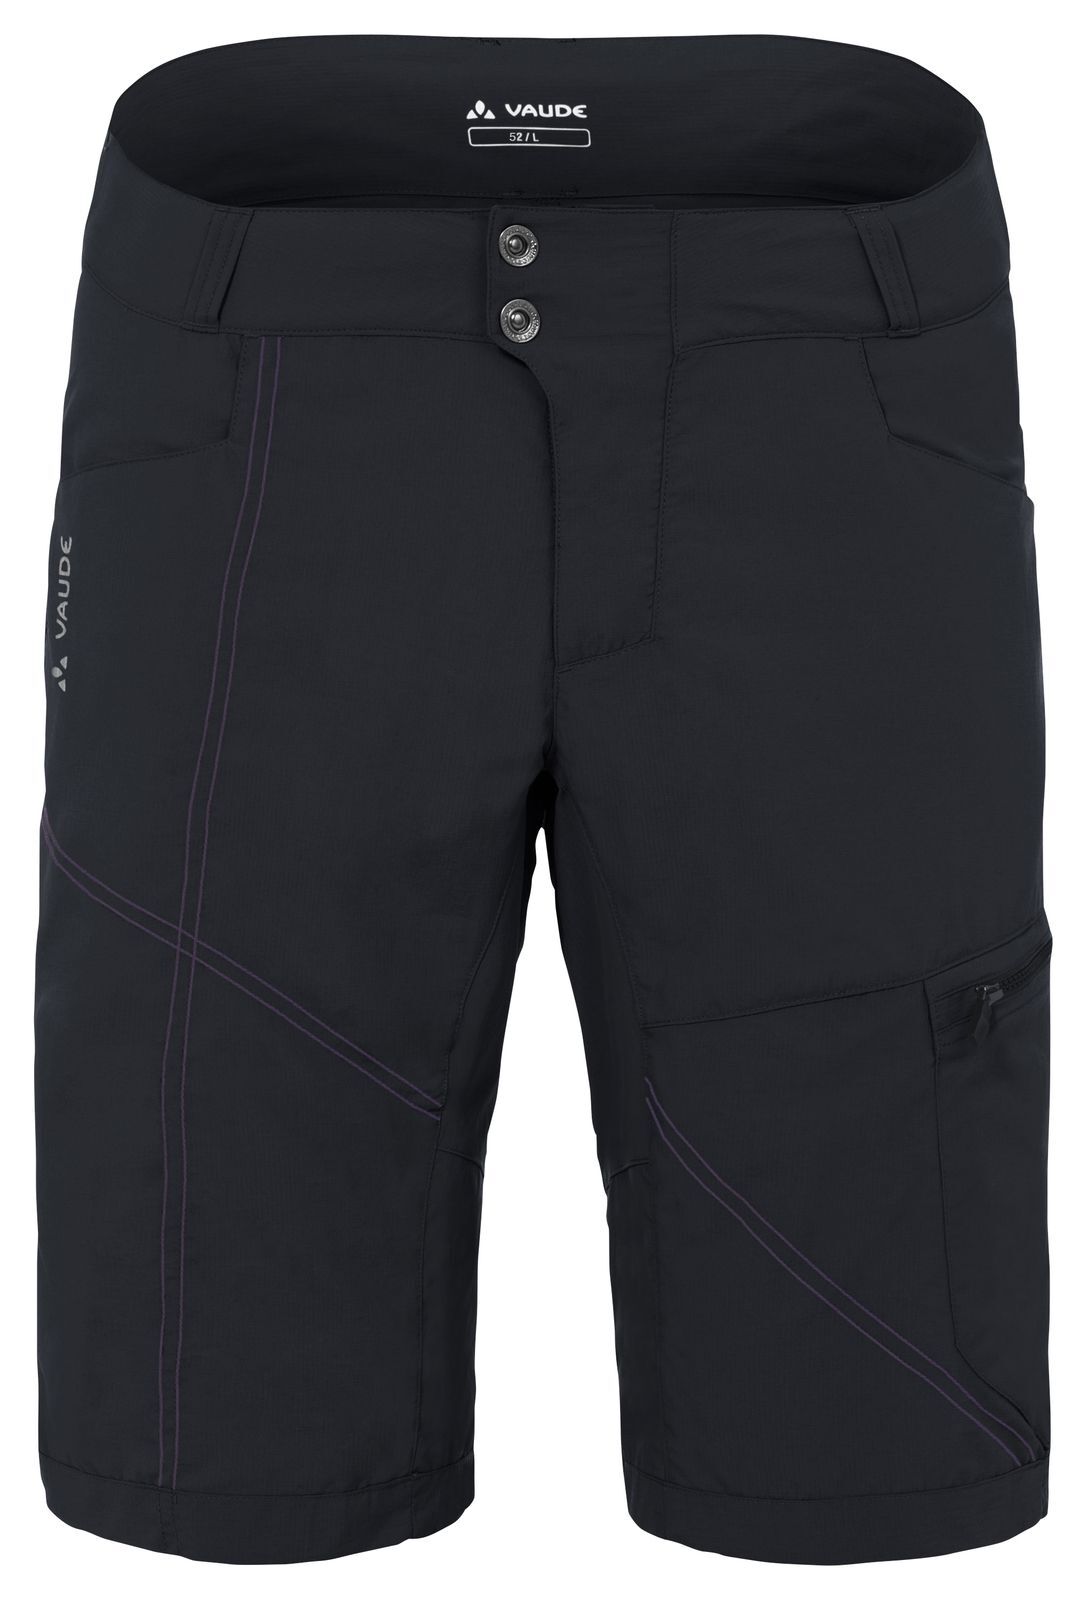 Vaude Tamaro Shorts - MTB shorts - Men's